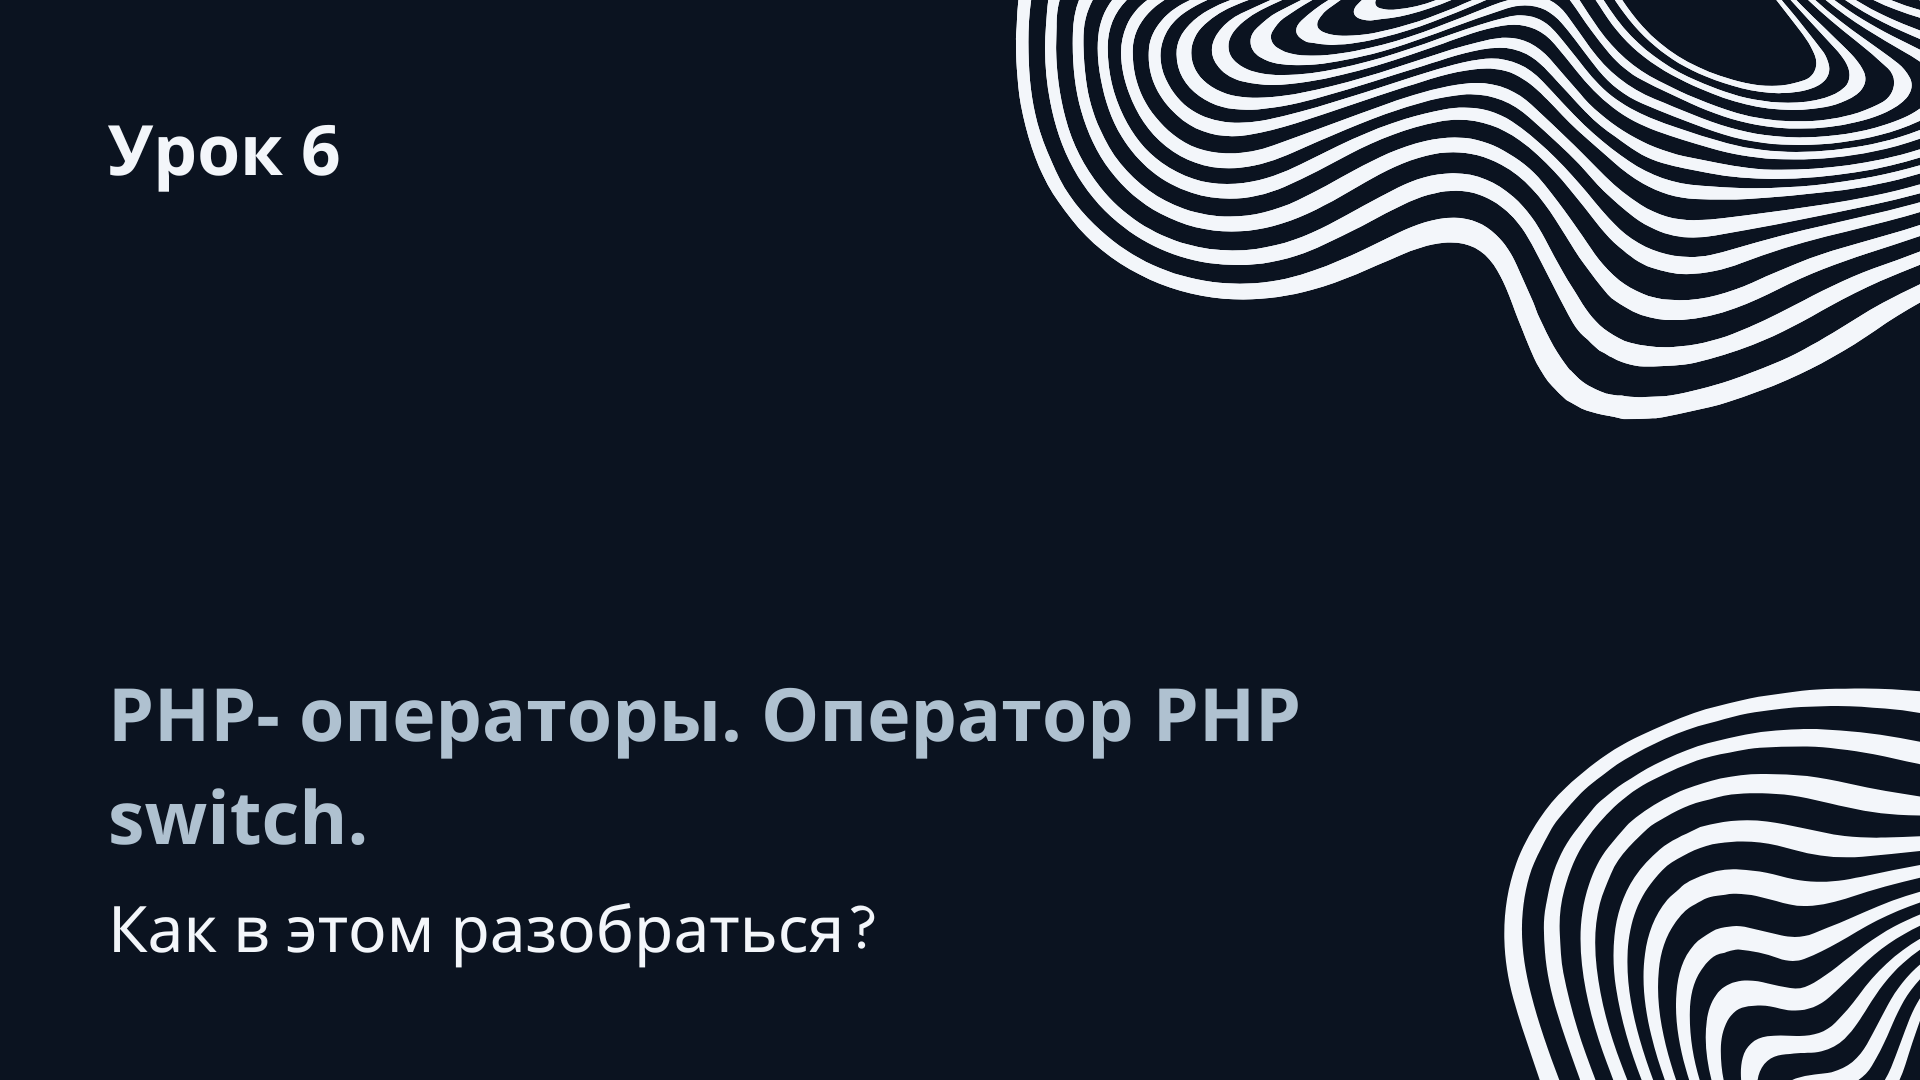 Урок 6. PHP- операторы. Оператор PHP switch.